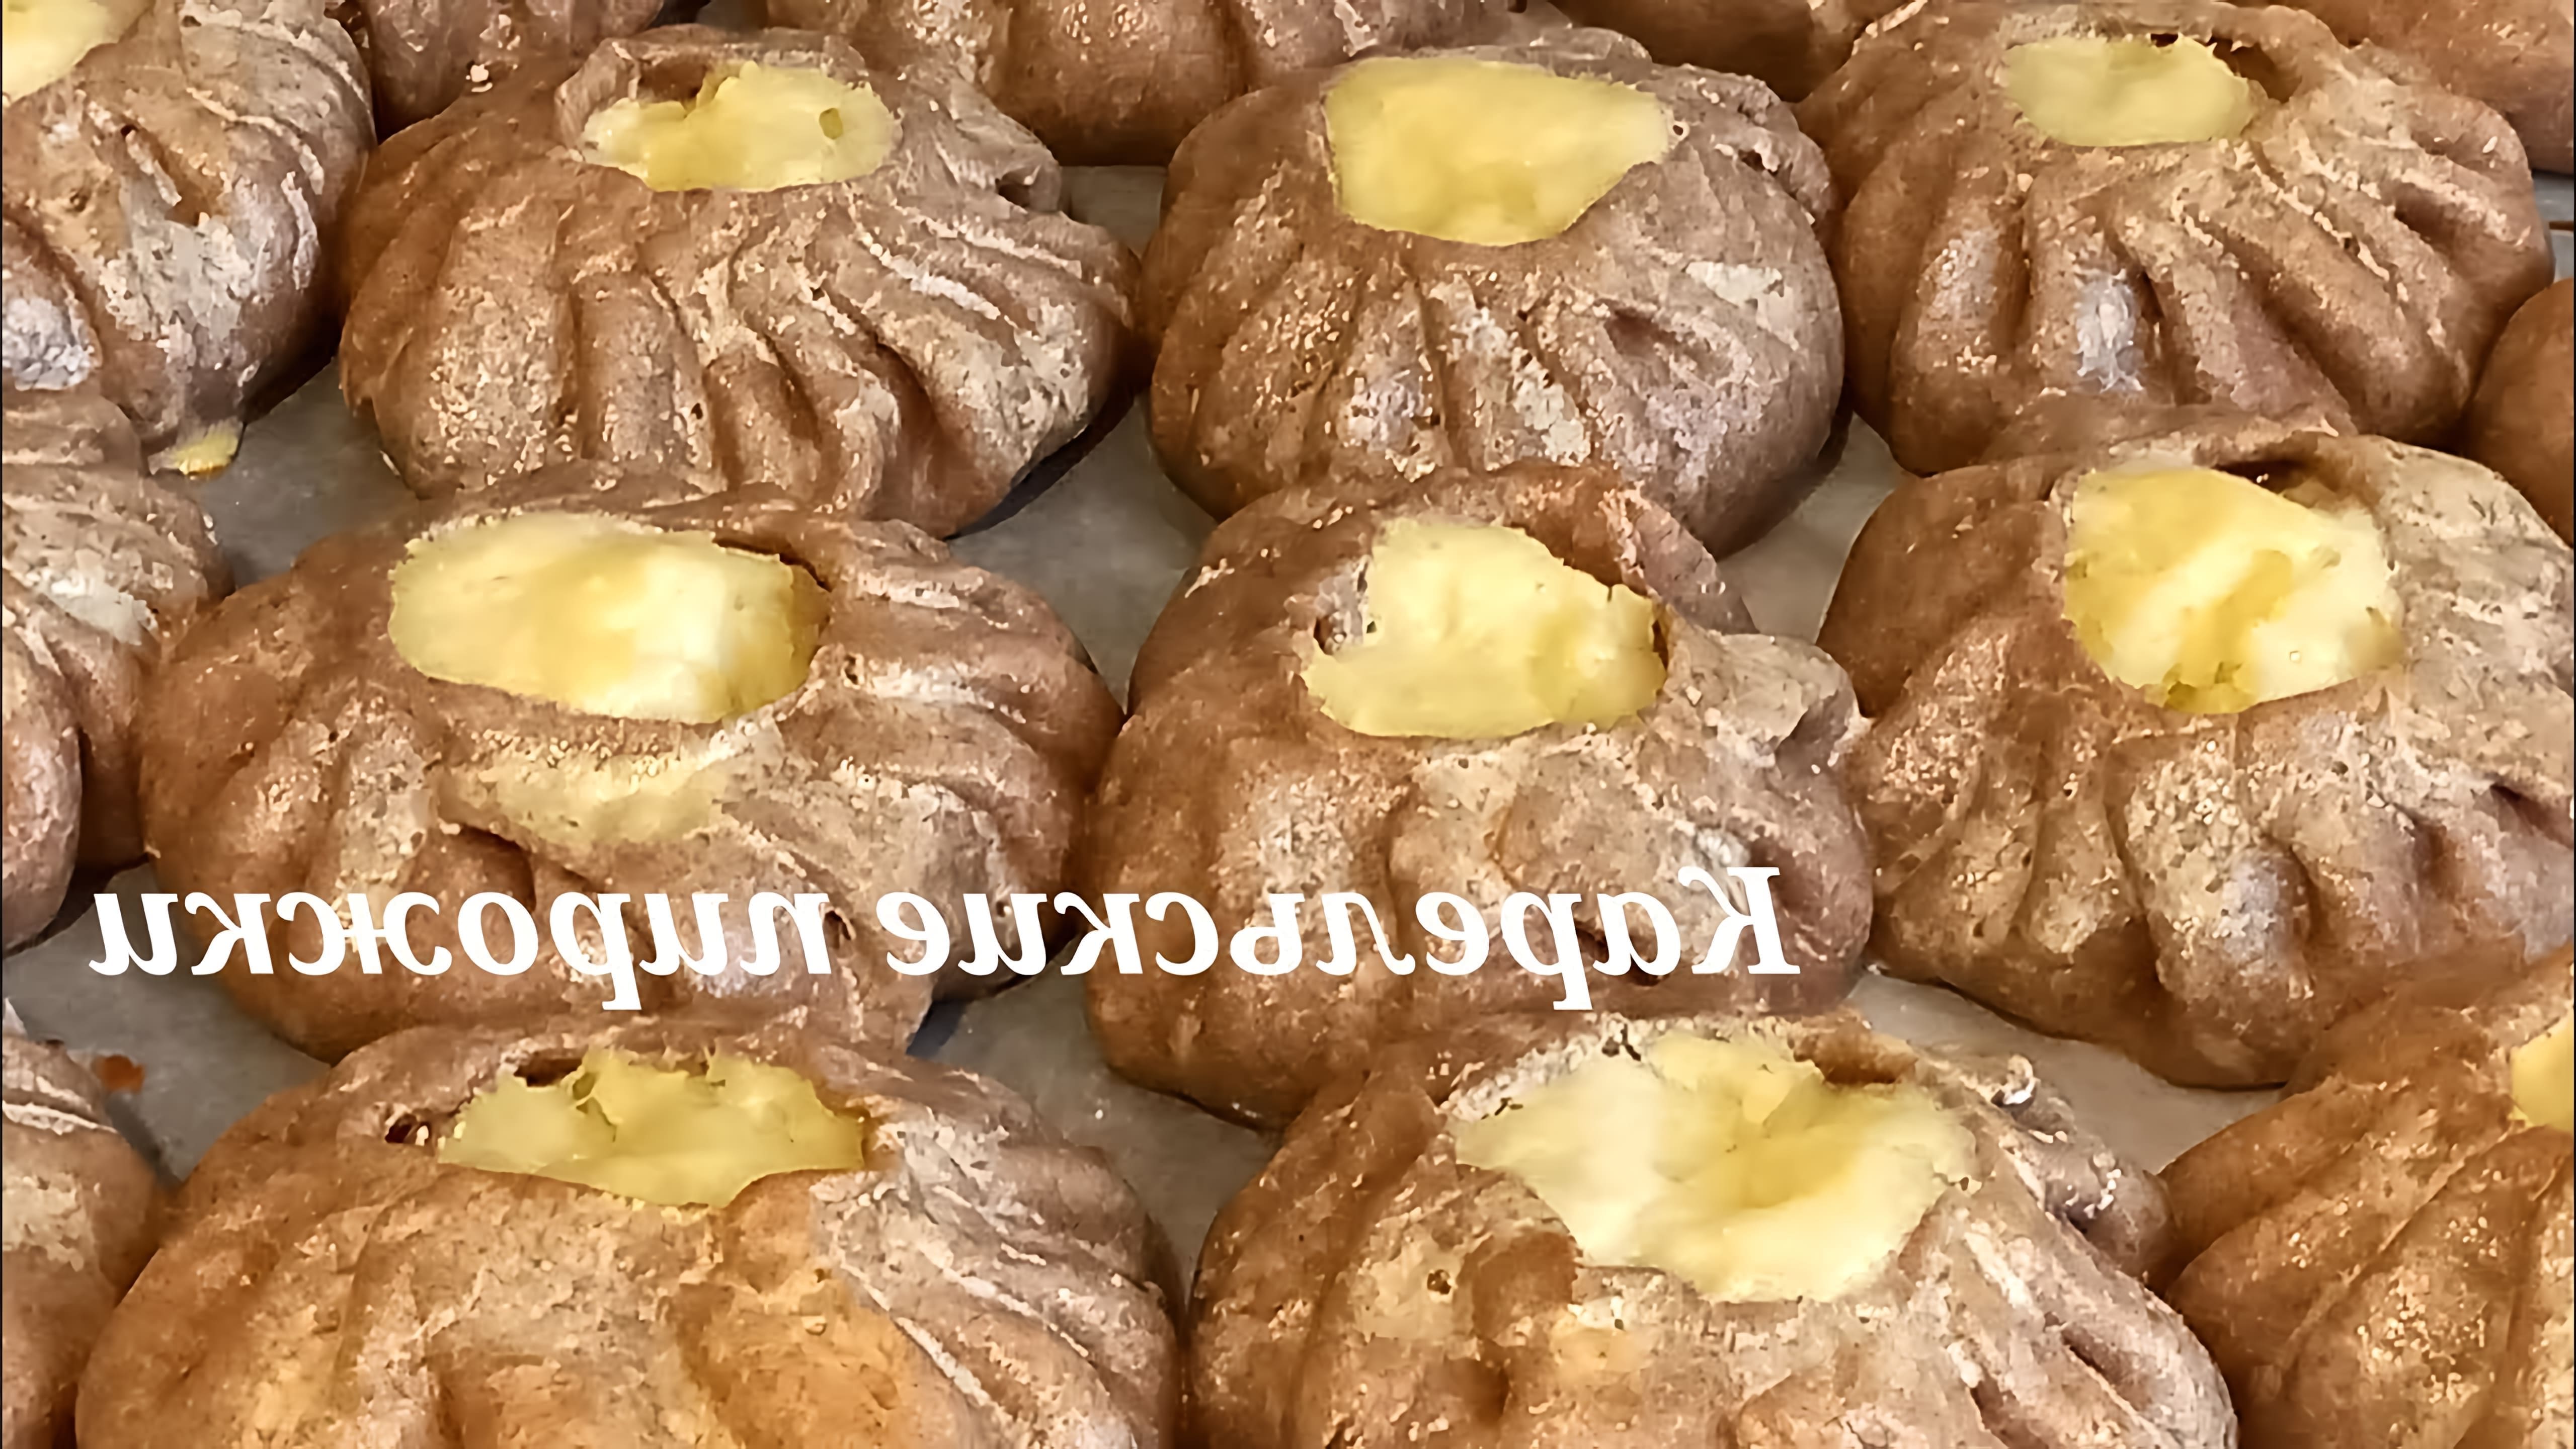 В этом видео демонстрируется процесс приготовления карельских ржаных пирожков с картофельной начинкой